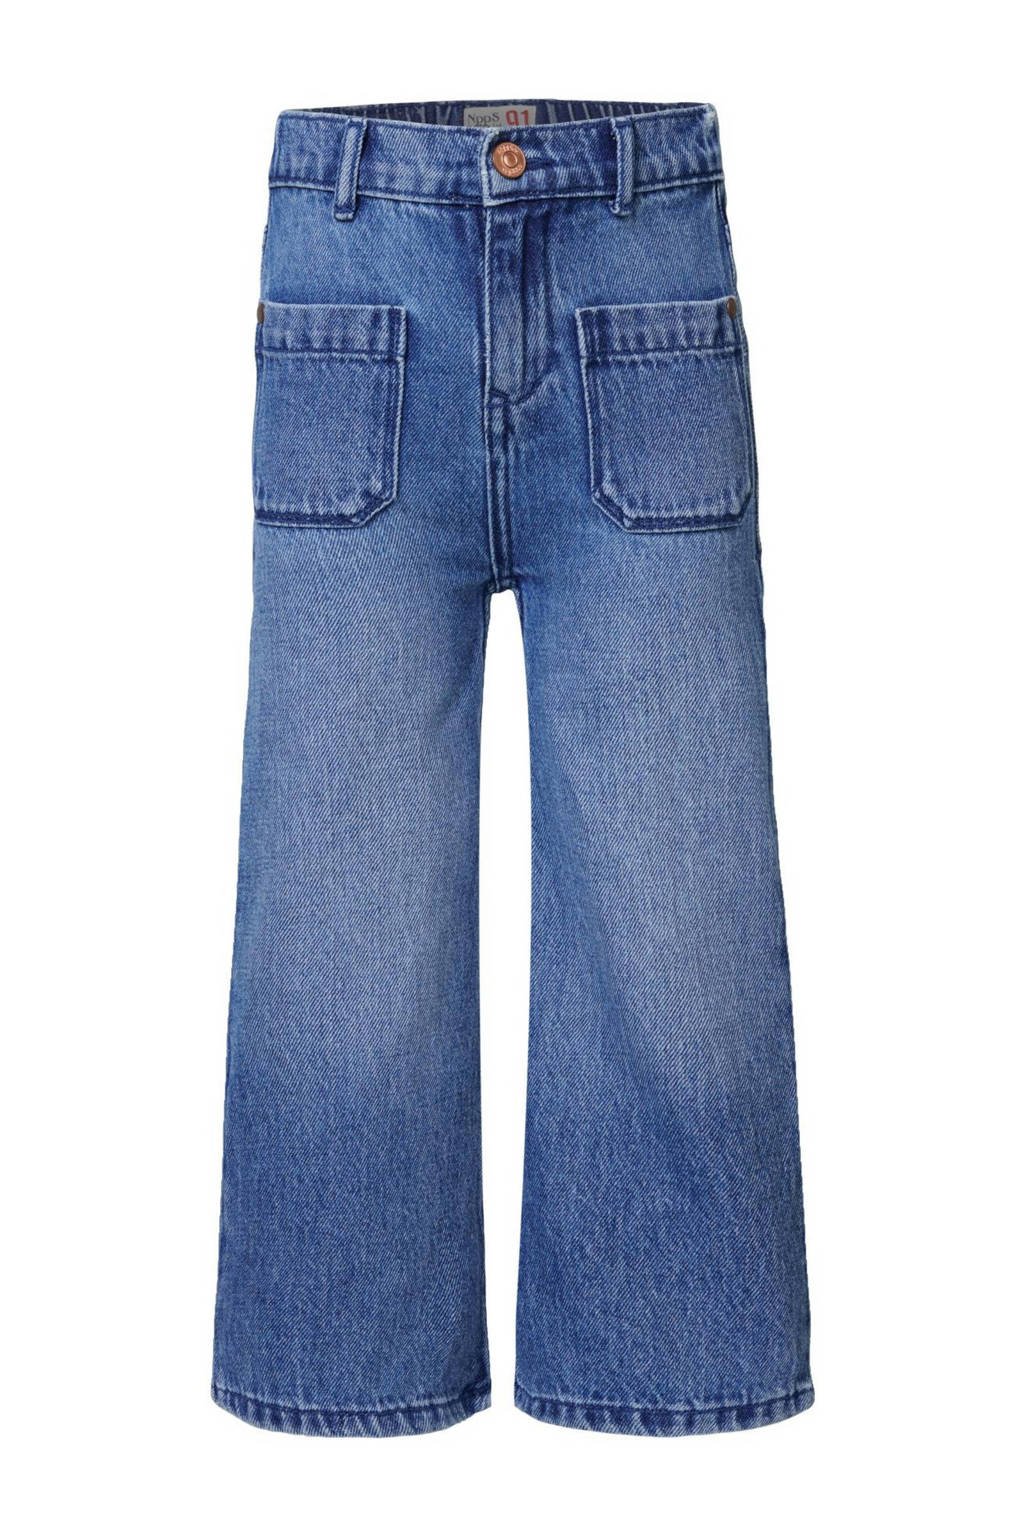 wide leg jeans Edwardsville medium blue denim wash